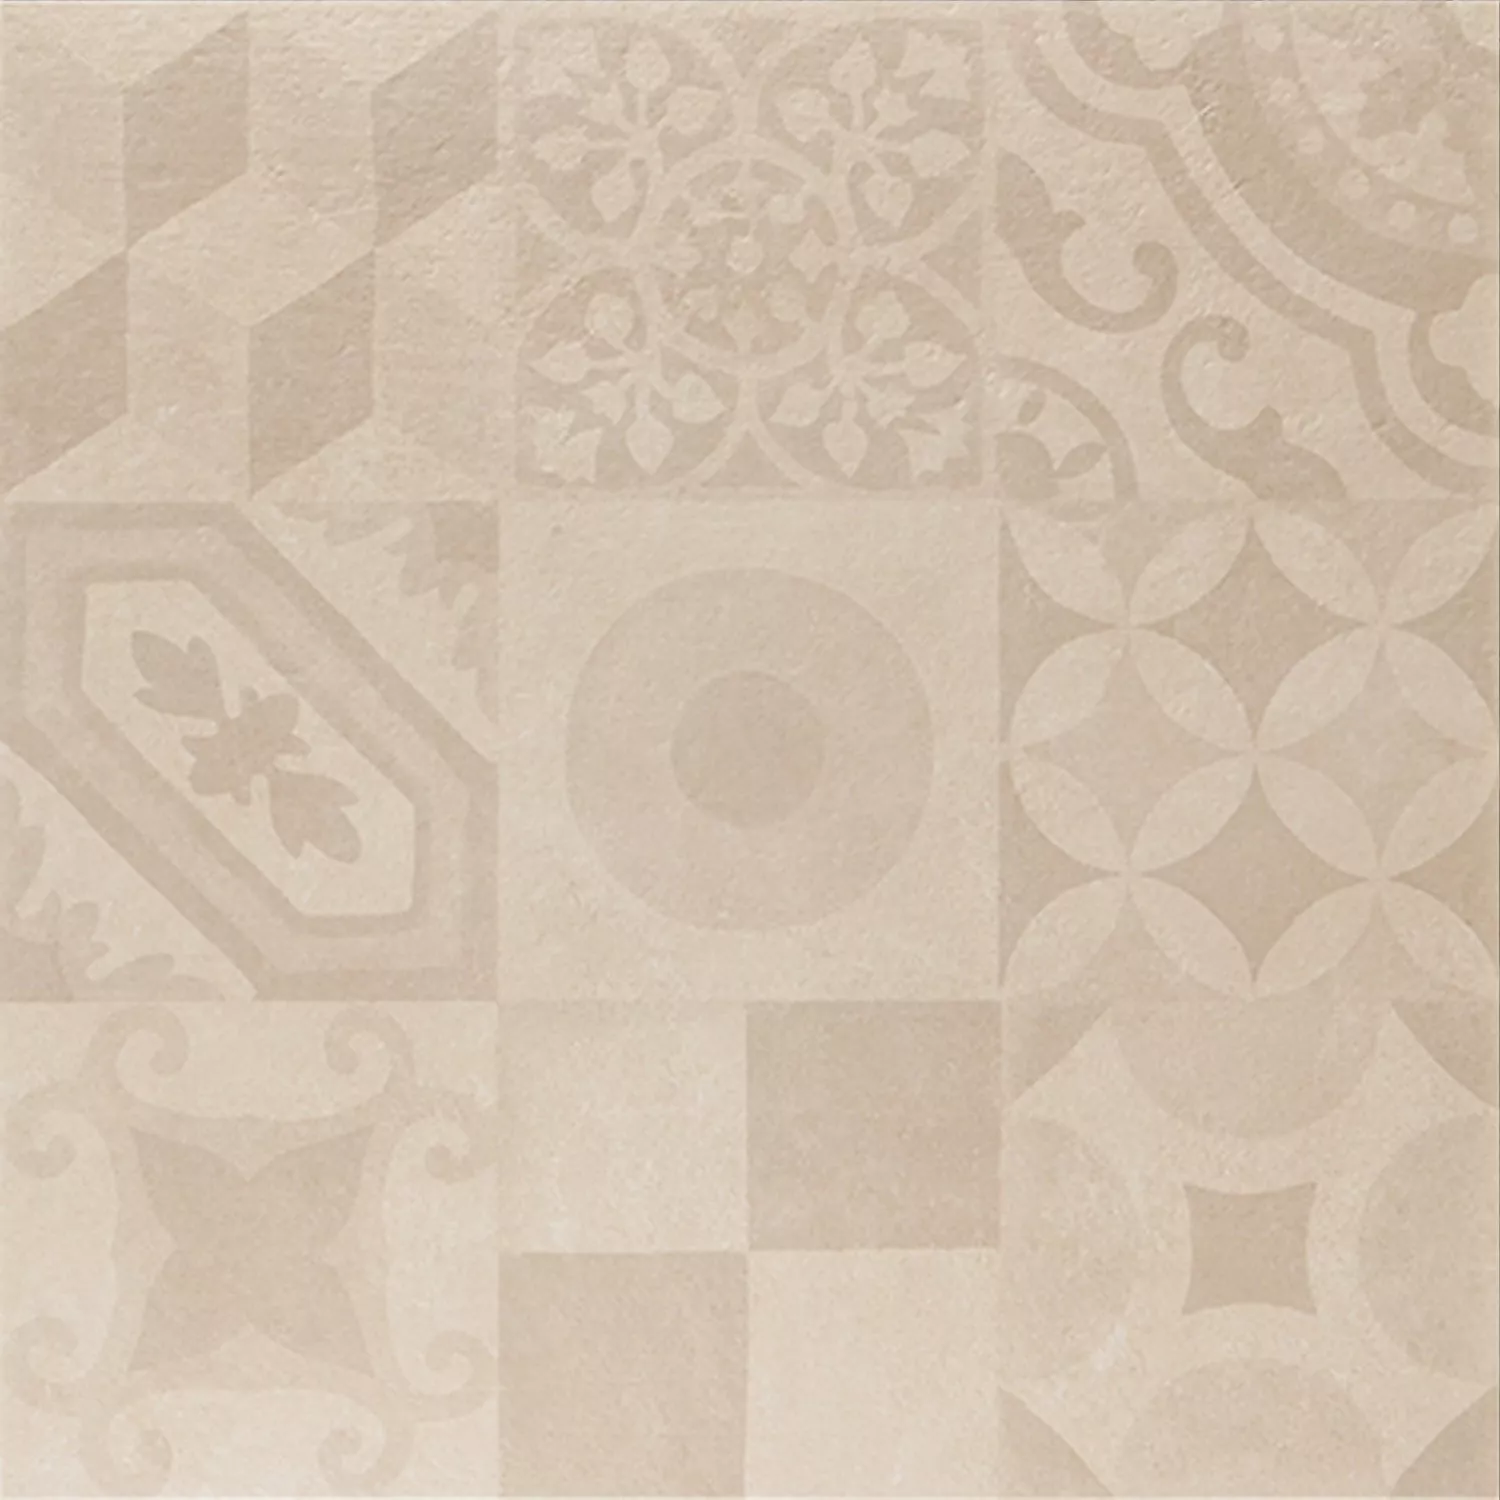 Πλακάκια Ντεκόρ Hayat Kρέμα 60x60cm